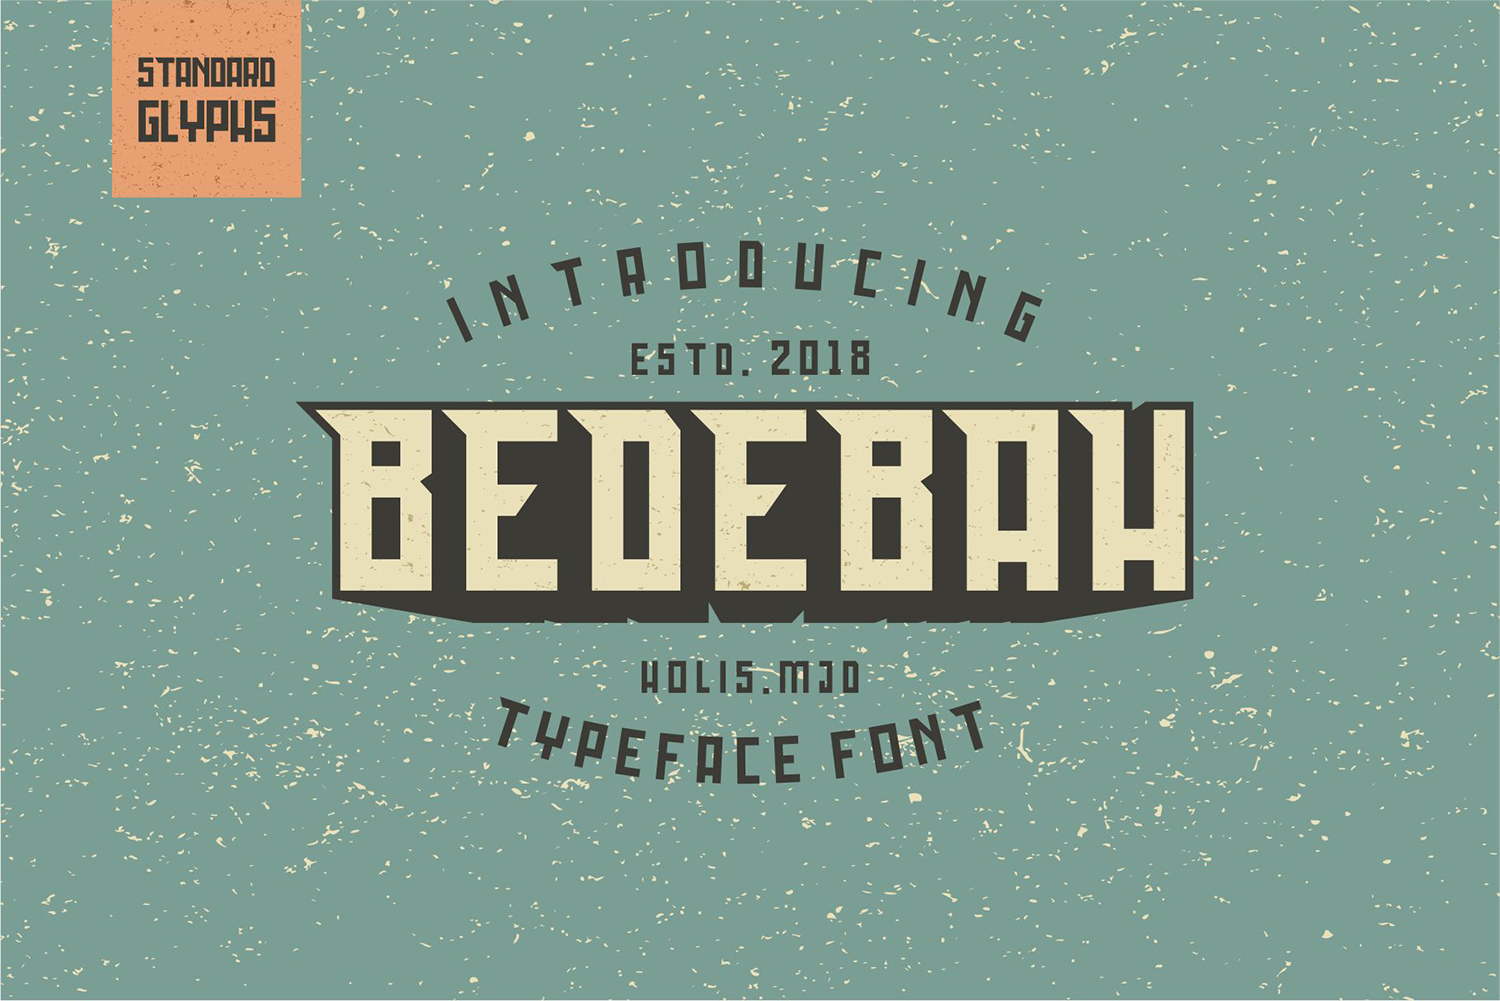 Bedebah Free Font